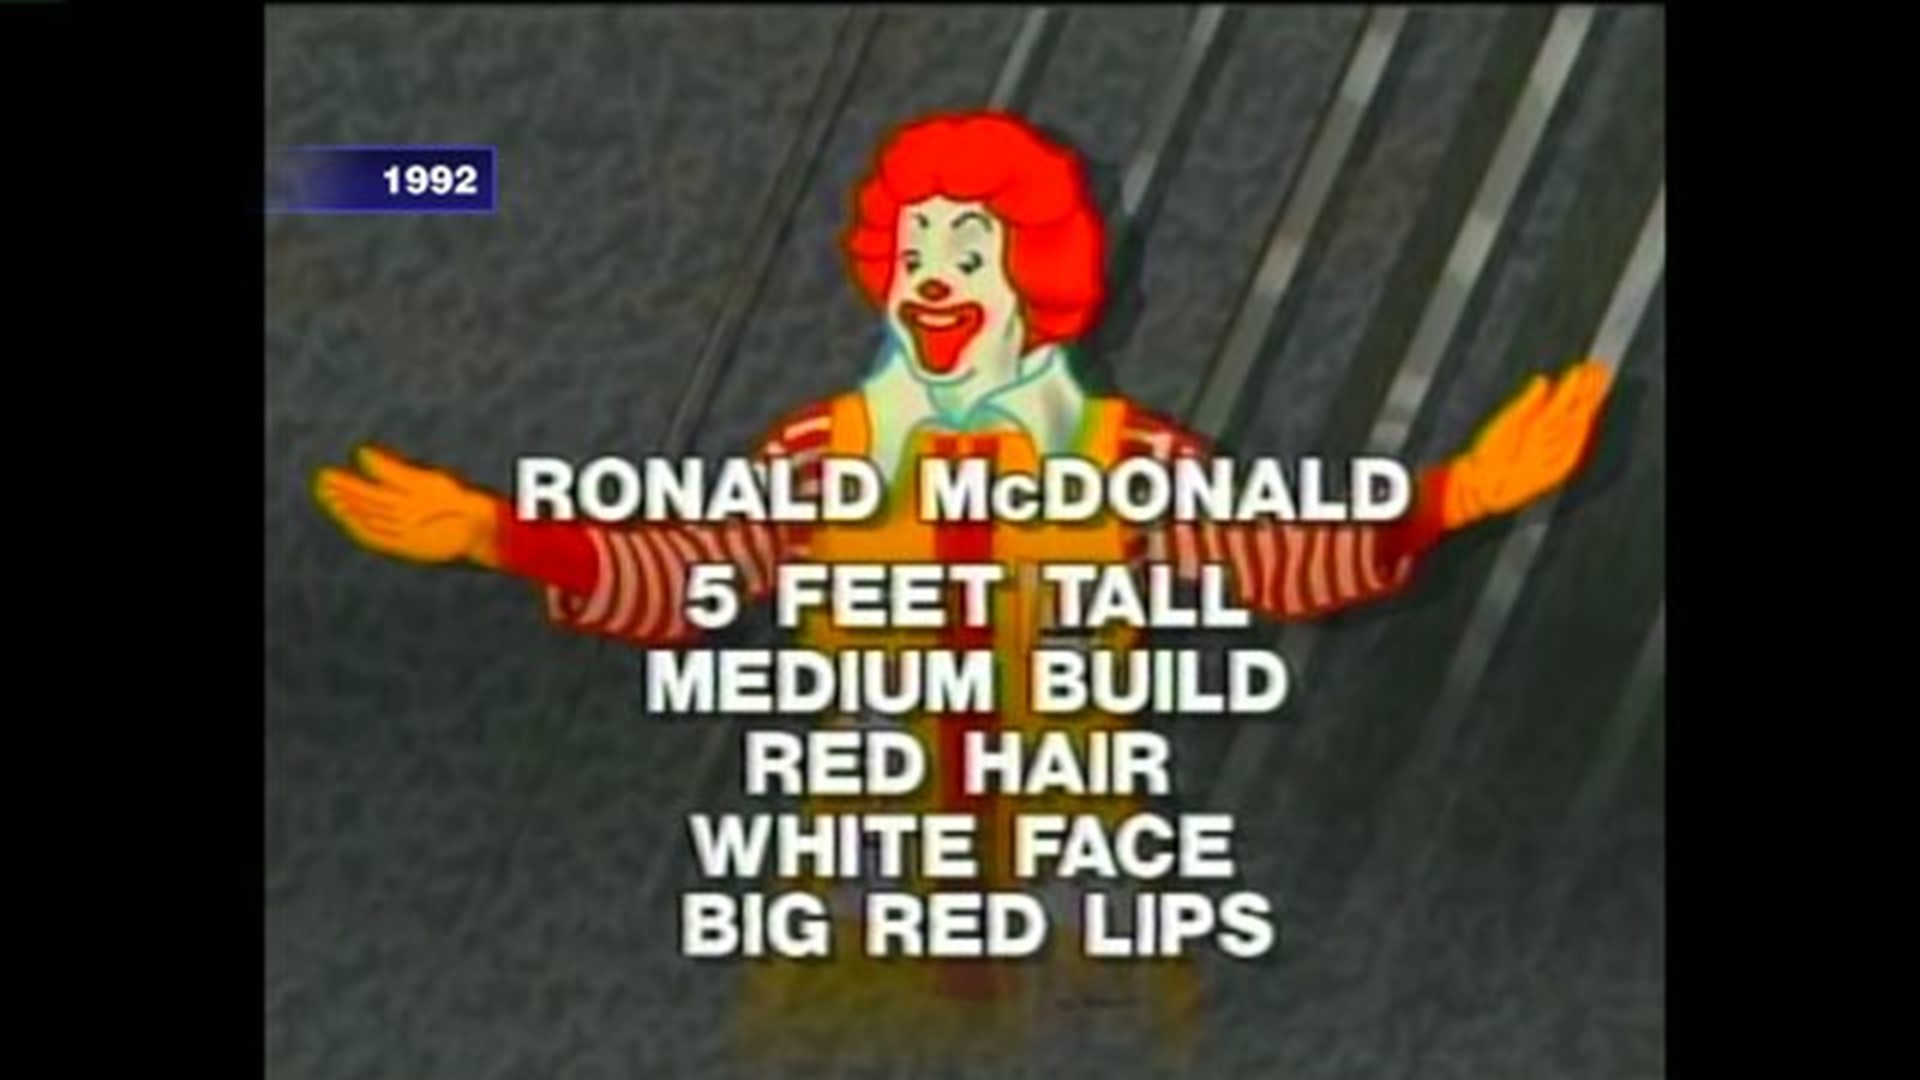 1992: Stealing Ronald McDonald